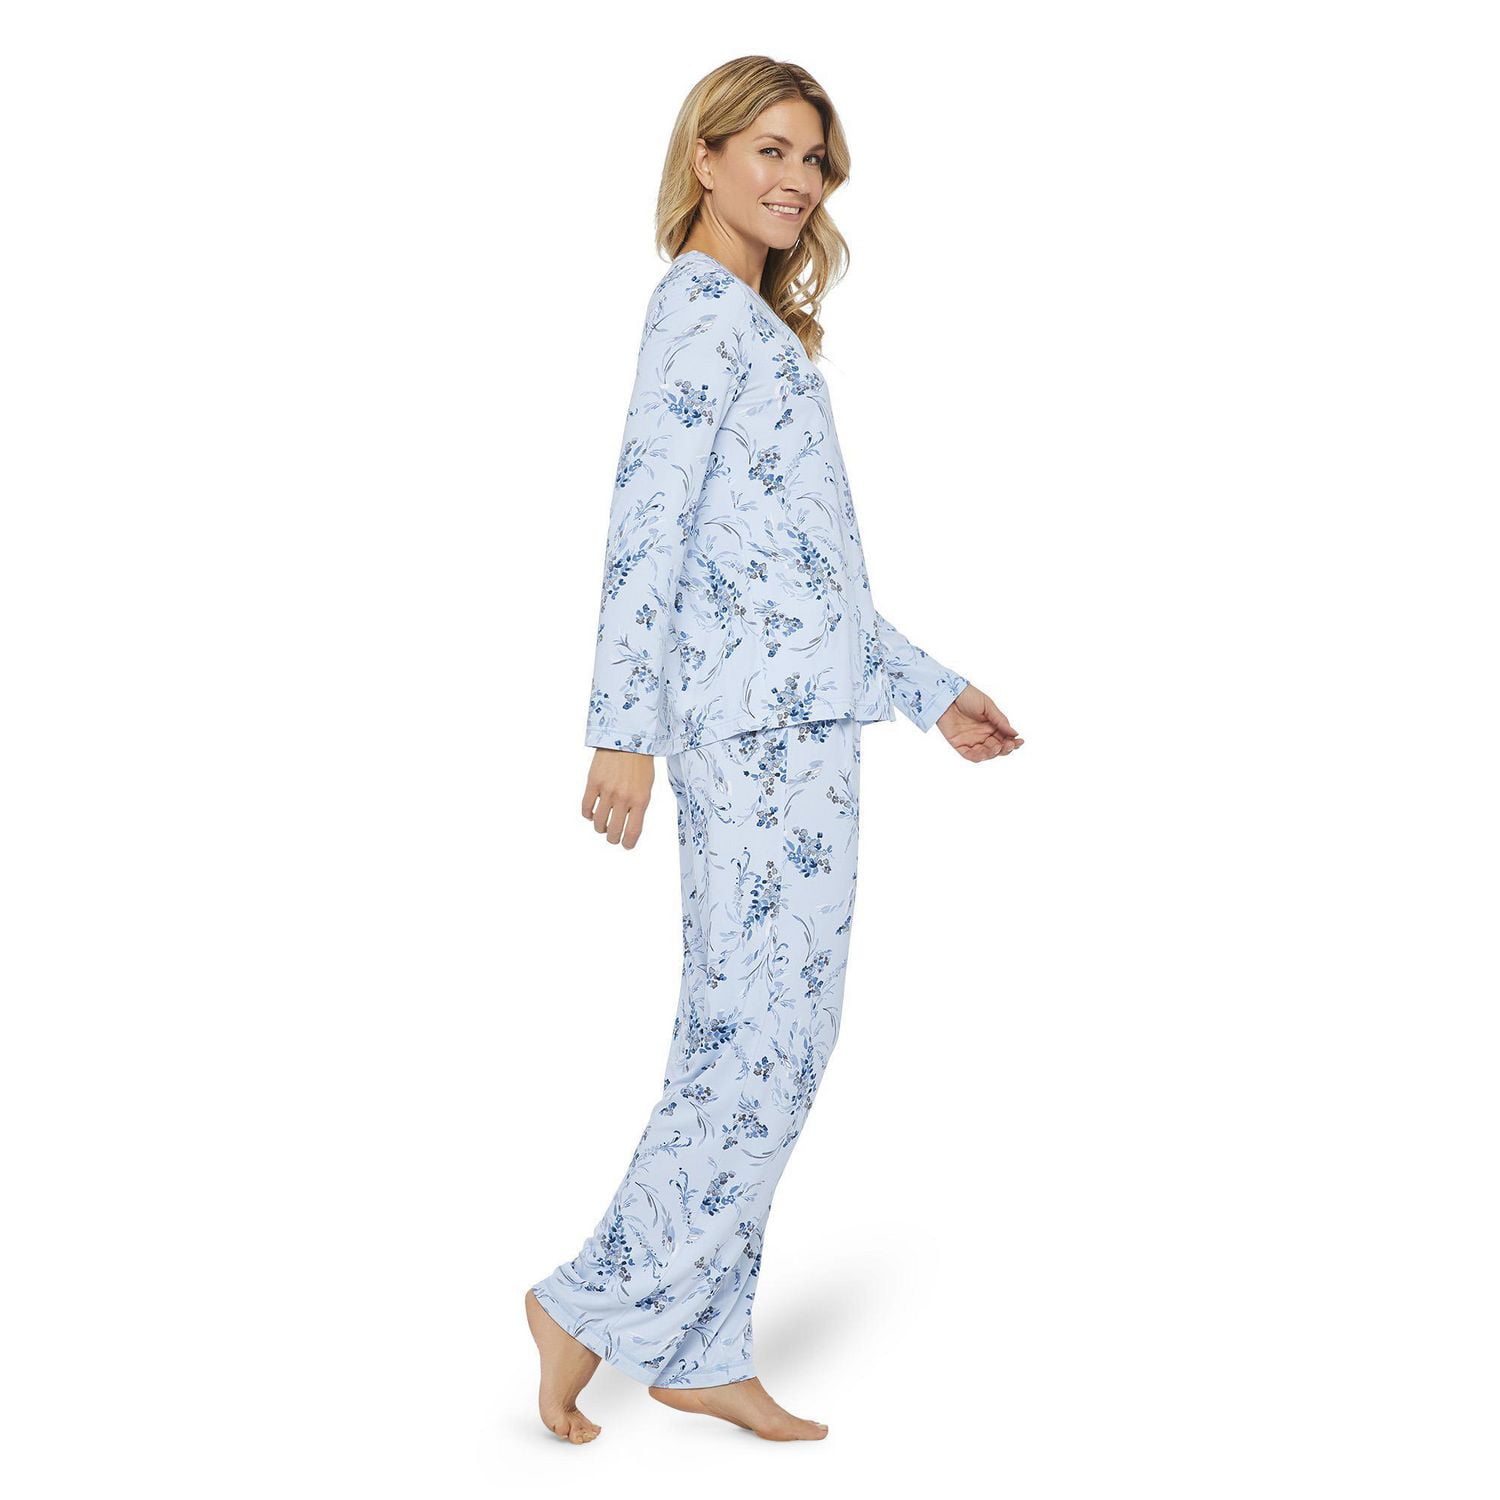 Pyjama Kids Luxury Sleep Wear Velvet Pajamas Designer Pyjamas